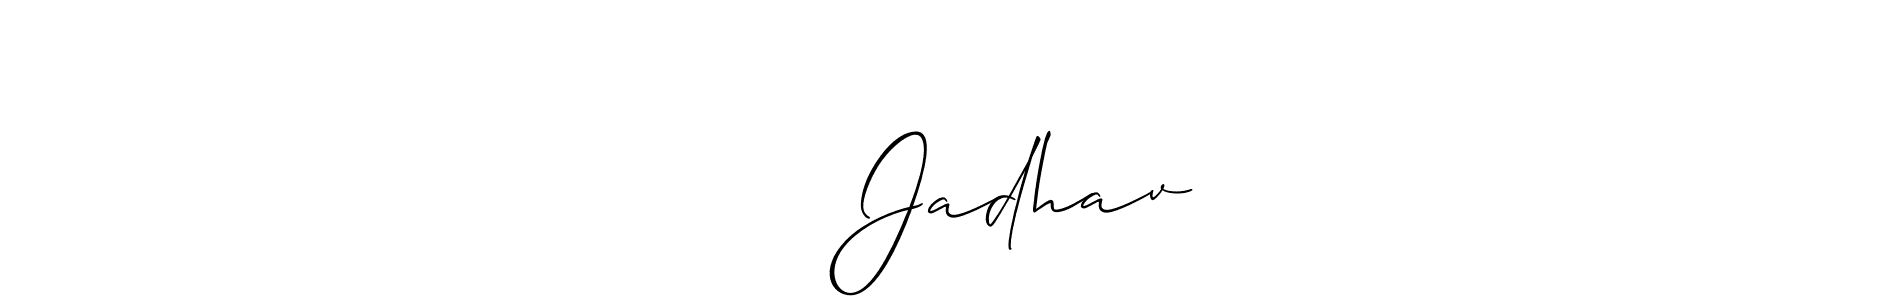 How to Draw सतिश Jadhav signature style? Allison_Script is a latest design signature styles for name सतिश Jadhav. सतिश Jadhav signature style 2 images and pictures png